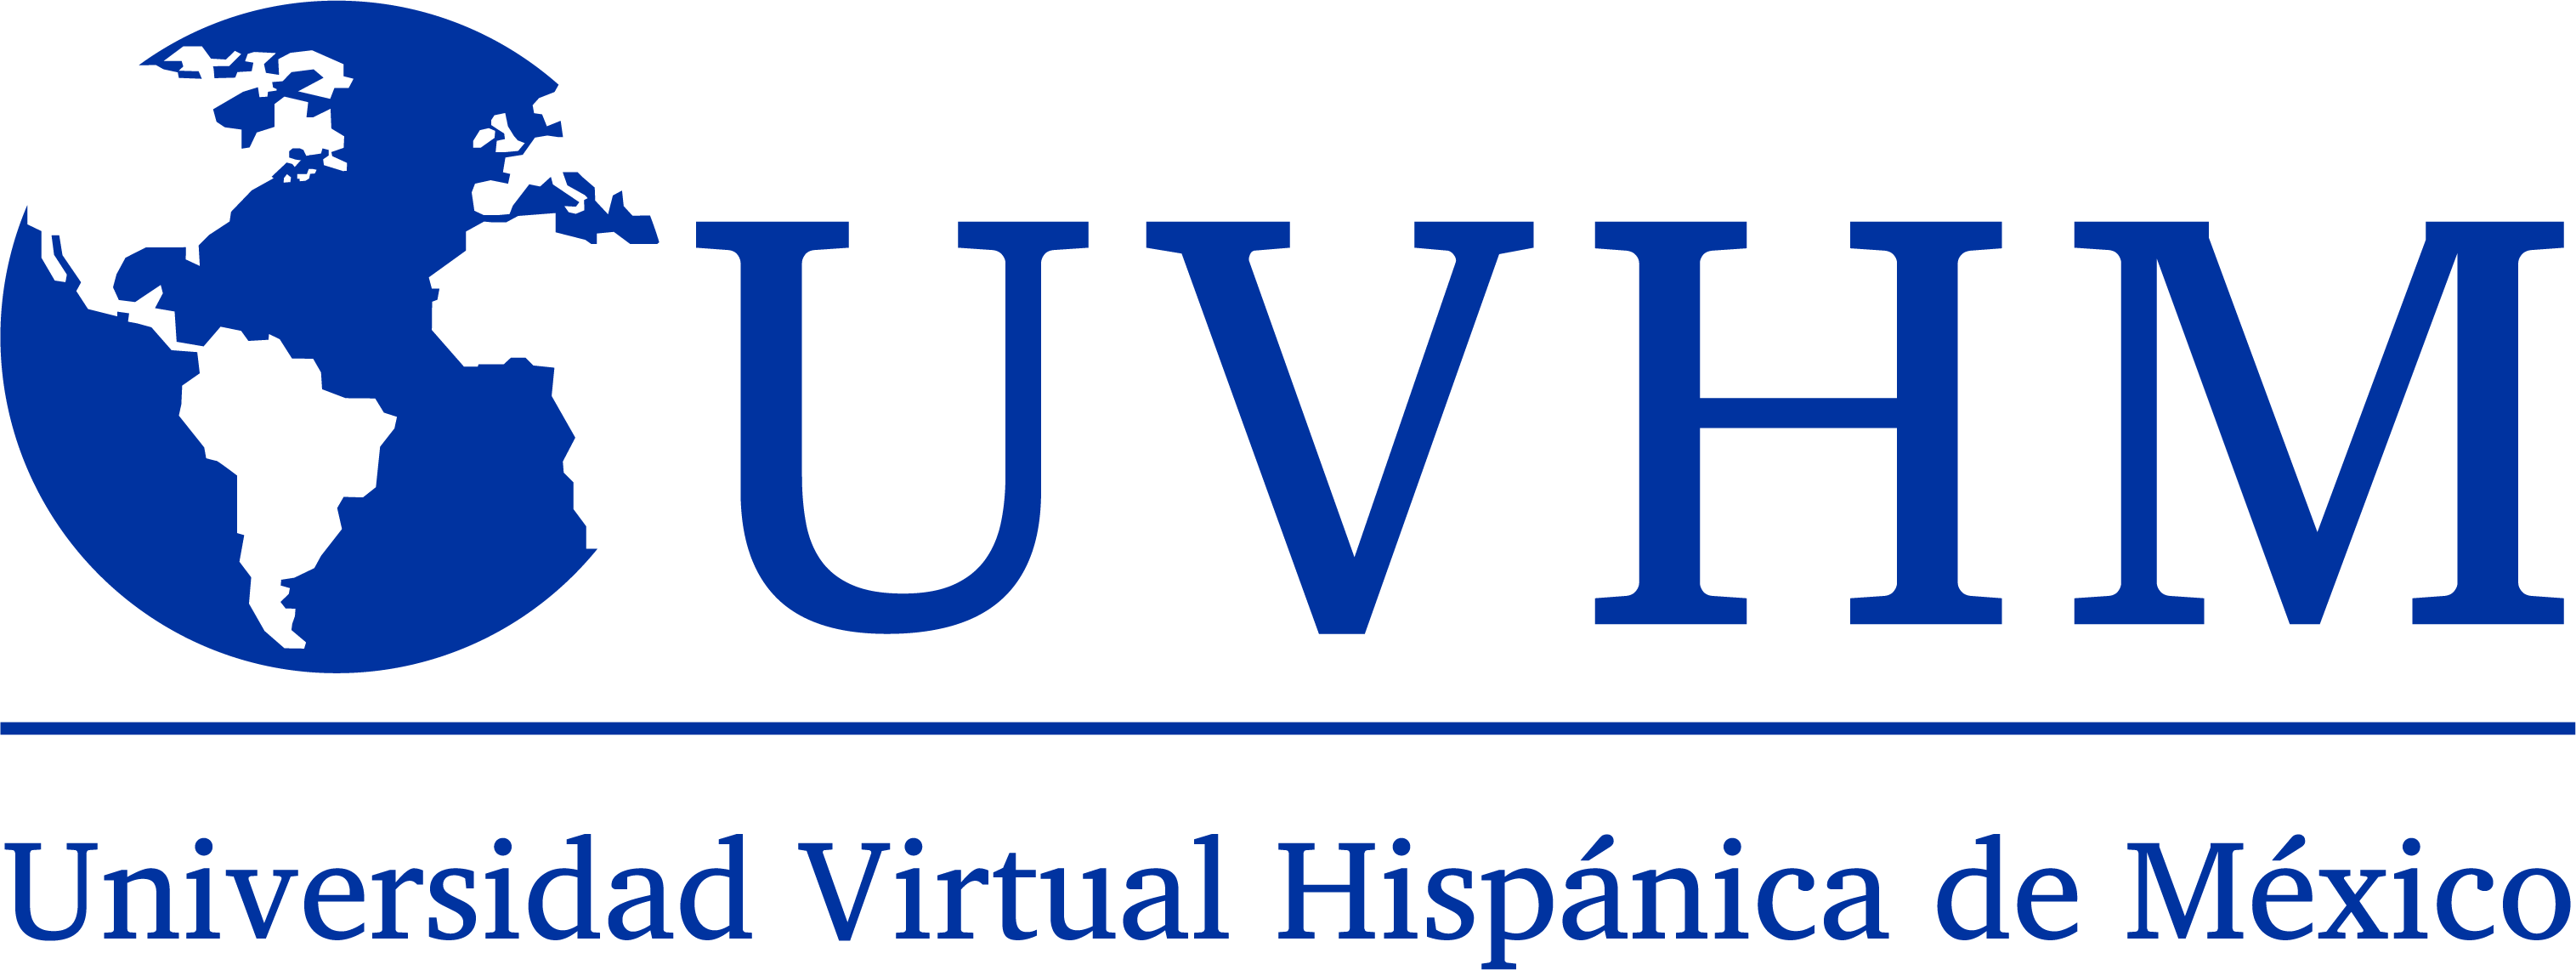 Campus Virtual Universidad Virtual Hispánica de México